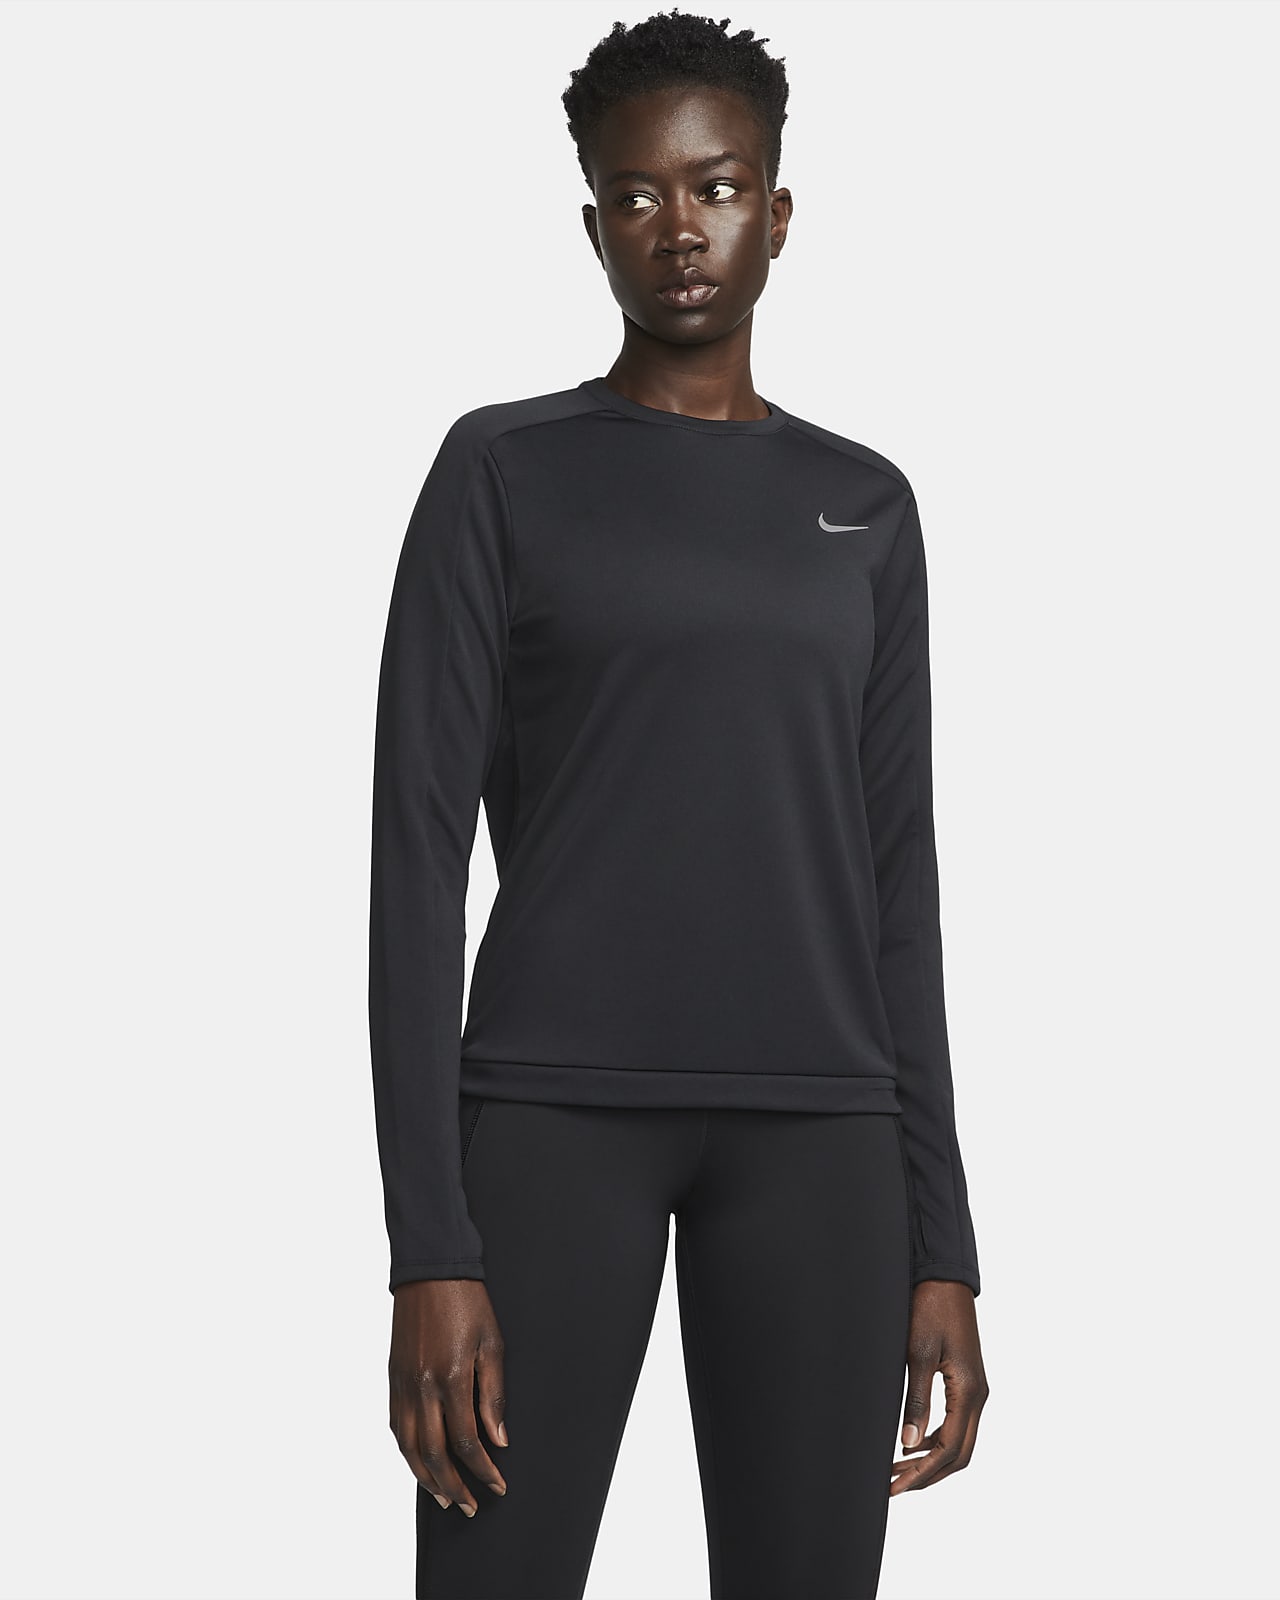 Nike Dri-FIT kerek nyakkivágású női futófelső